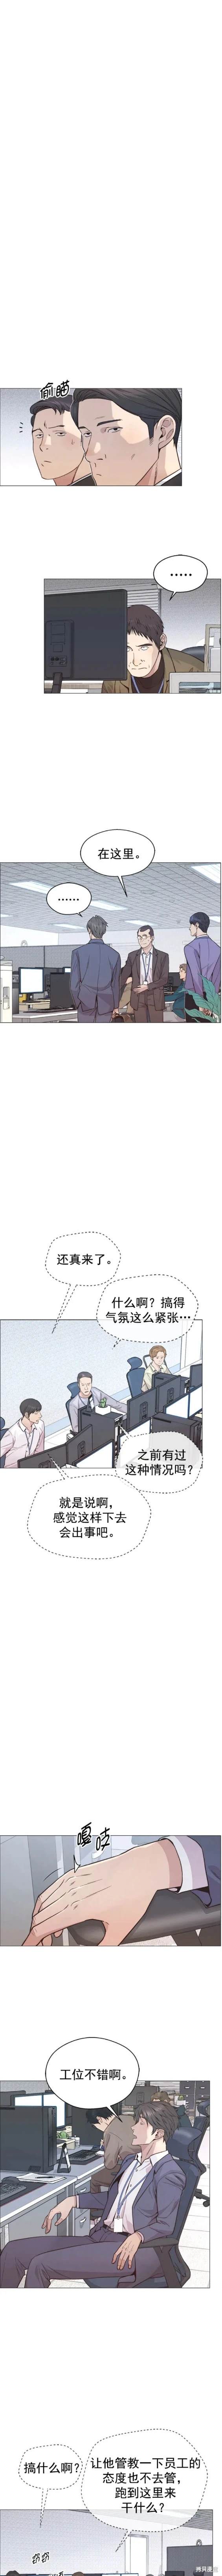 男子汉漫画,第157话7图